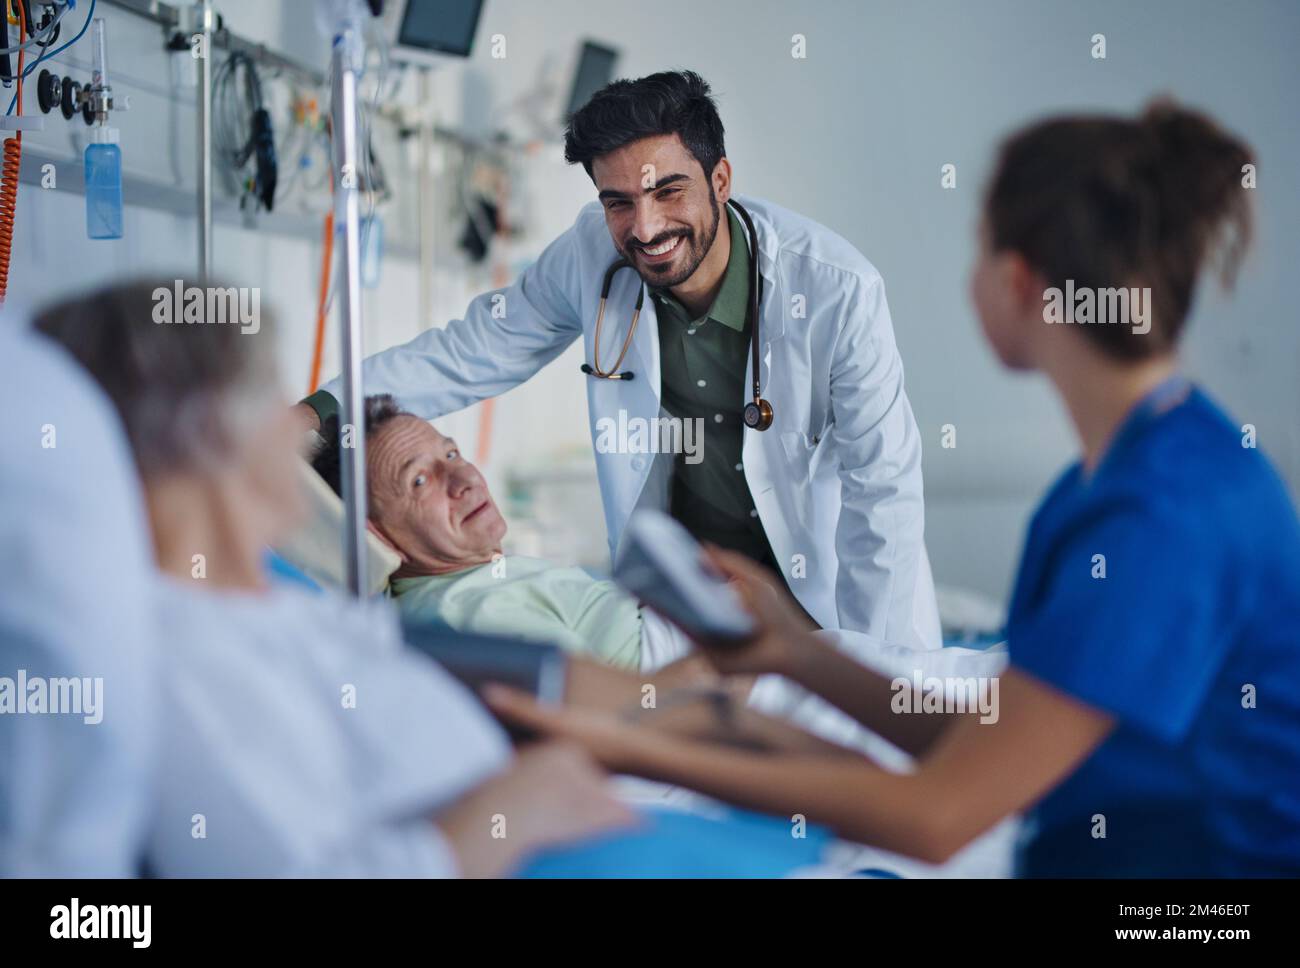 Giovane medico mediorientale sorridente durante l'esame dei pazienti nella stanza dell'ospedale. Foto Stock